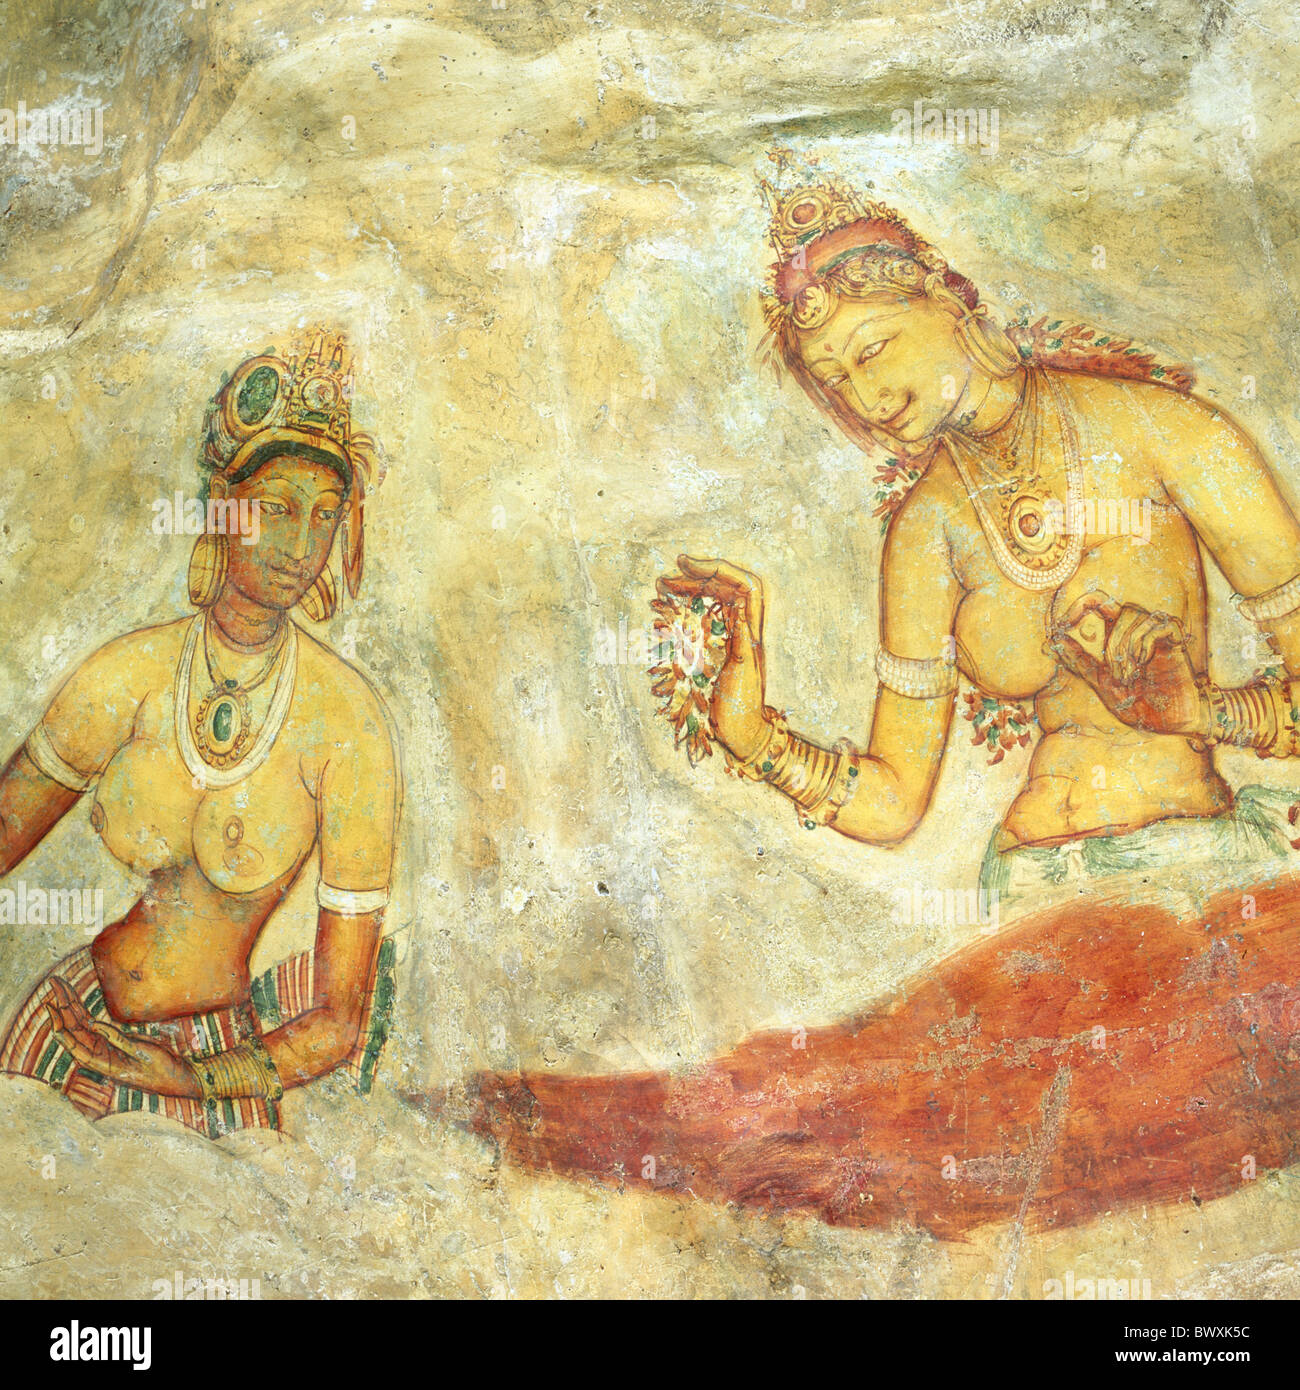 5 siglos de arte rupestre mujeres frescos ninfas celestiales Sri Lanka Asia Foto de stock